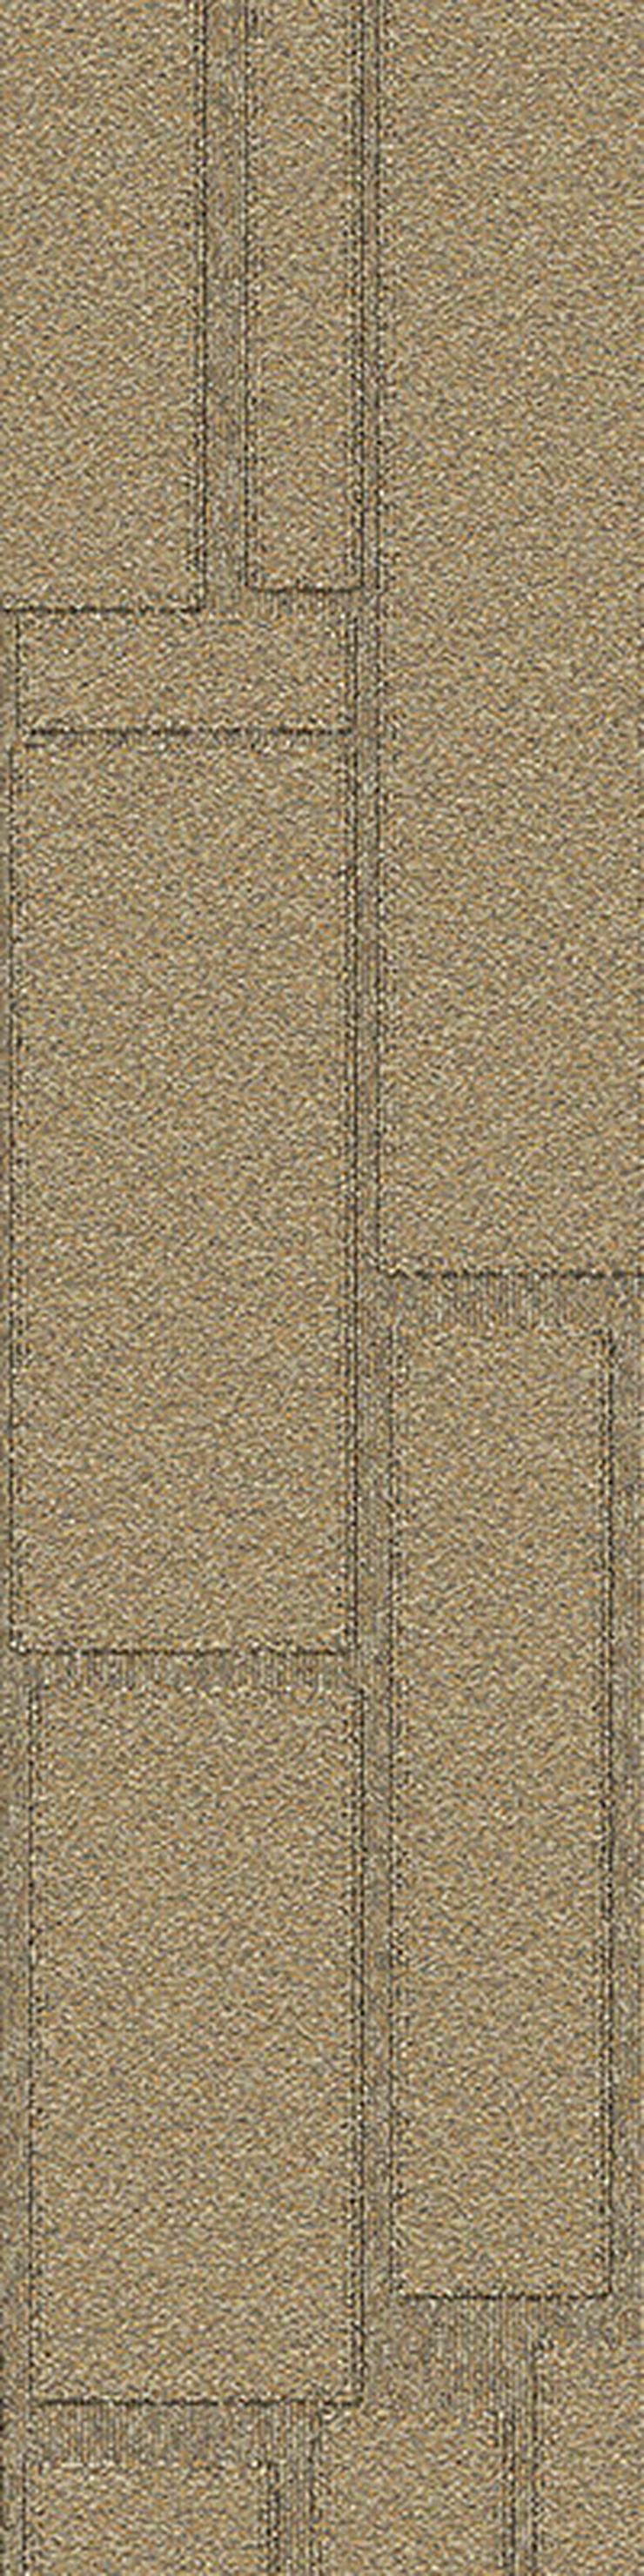 25 x 100cm Teppichfliesen mit schönem Muster * ANGEBOT! - Teppiche - Bild 3